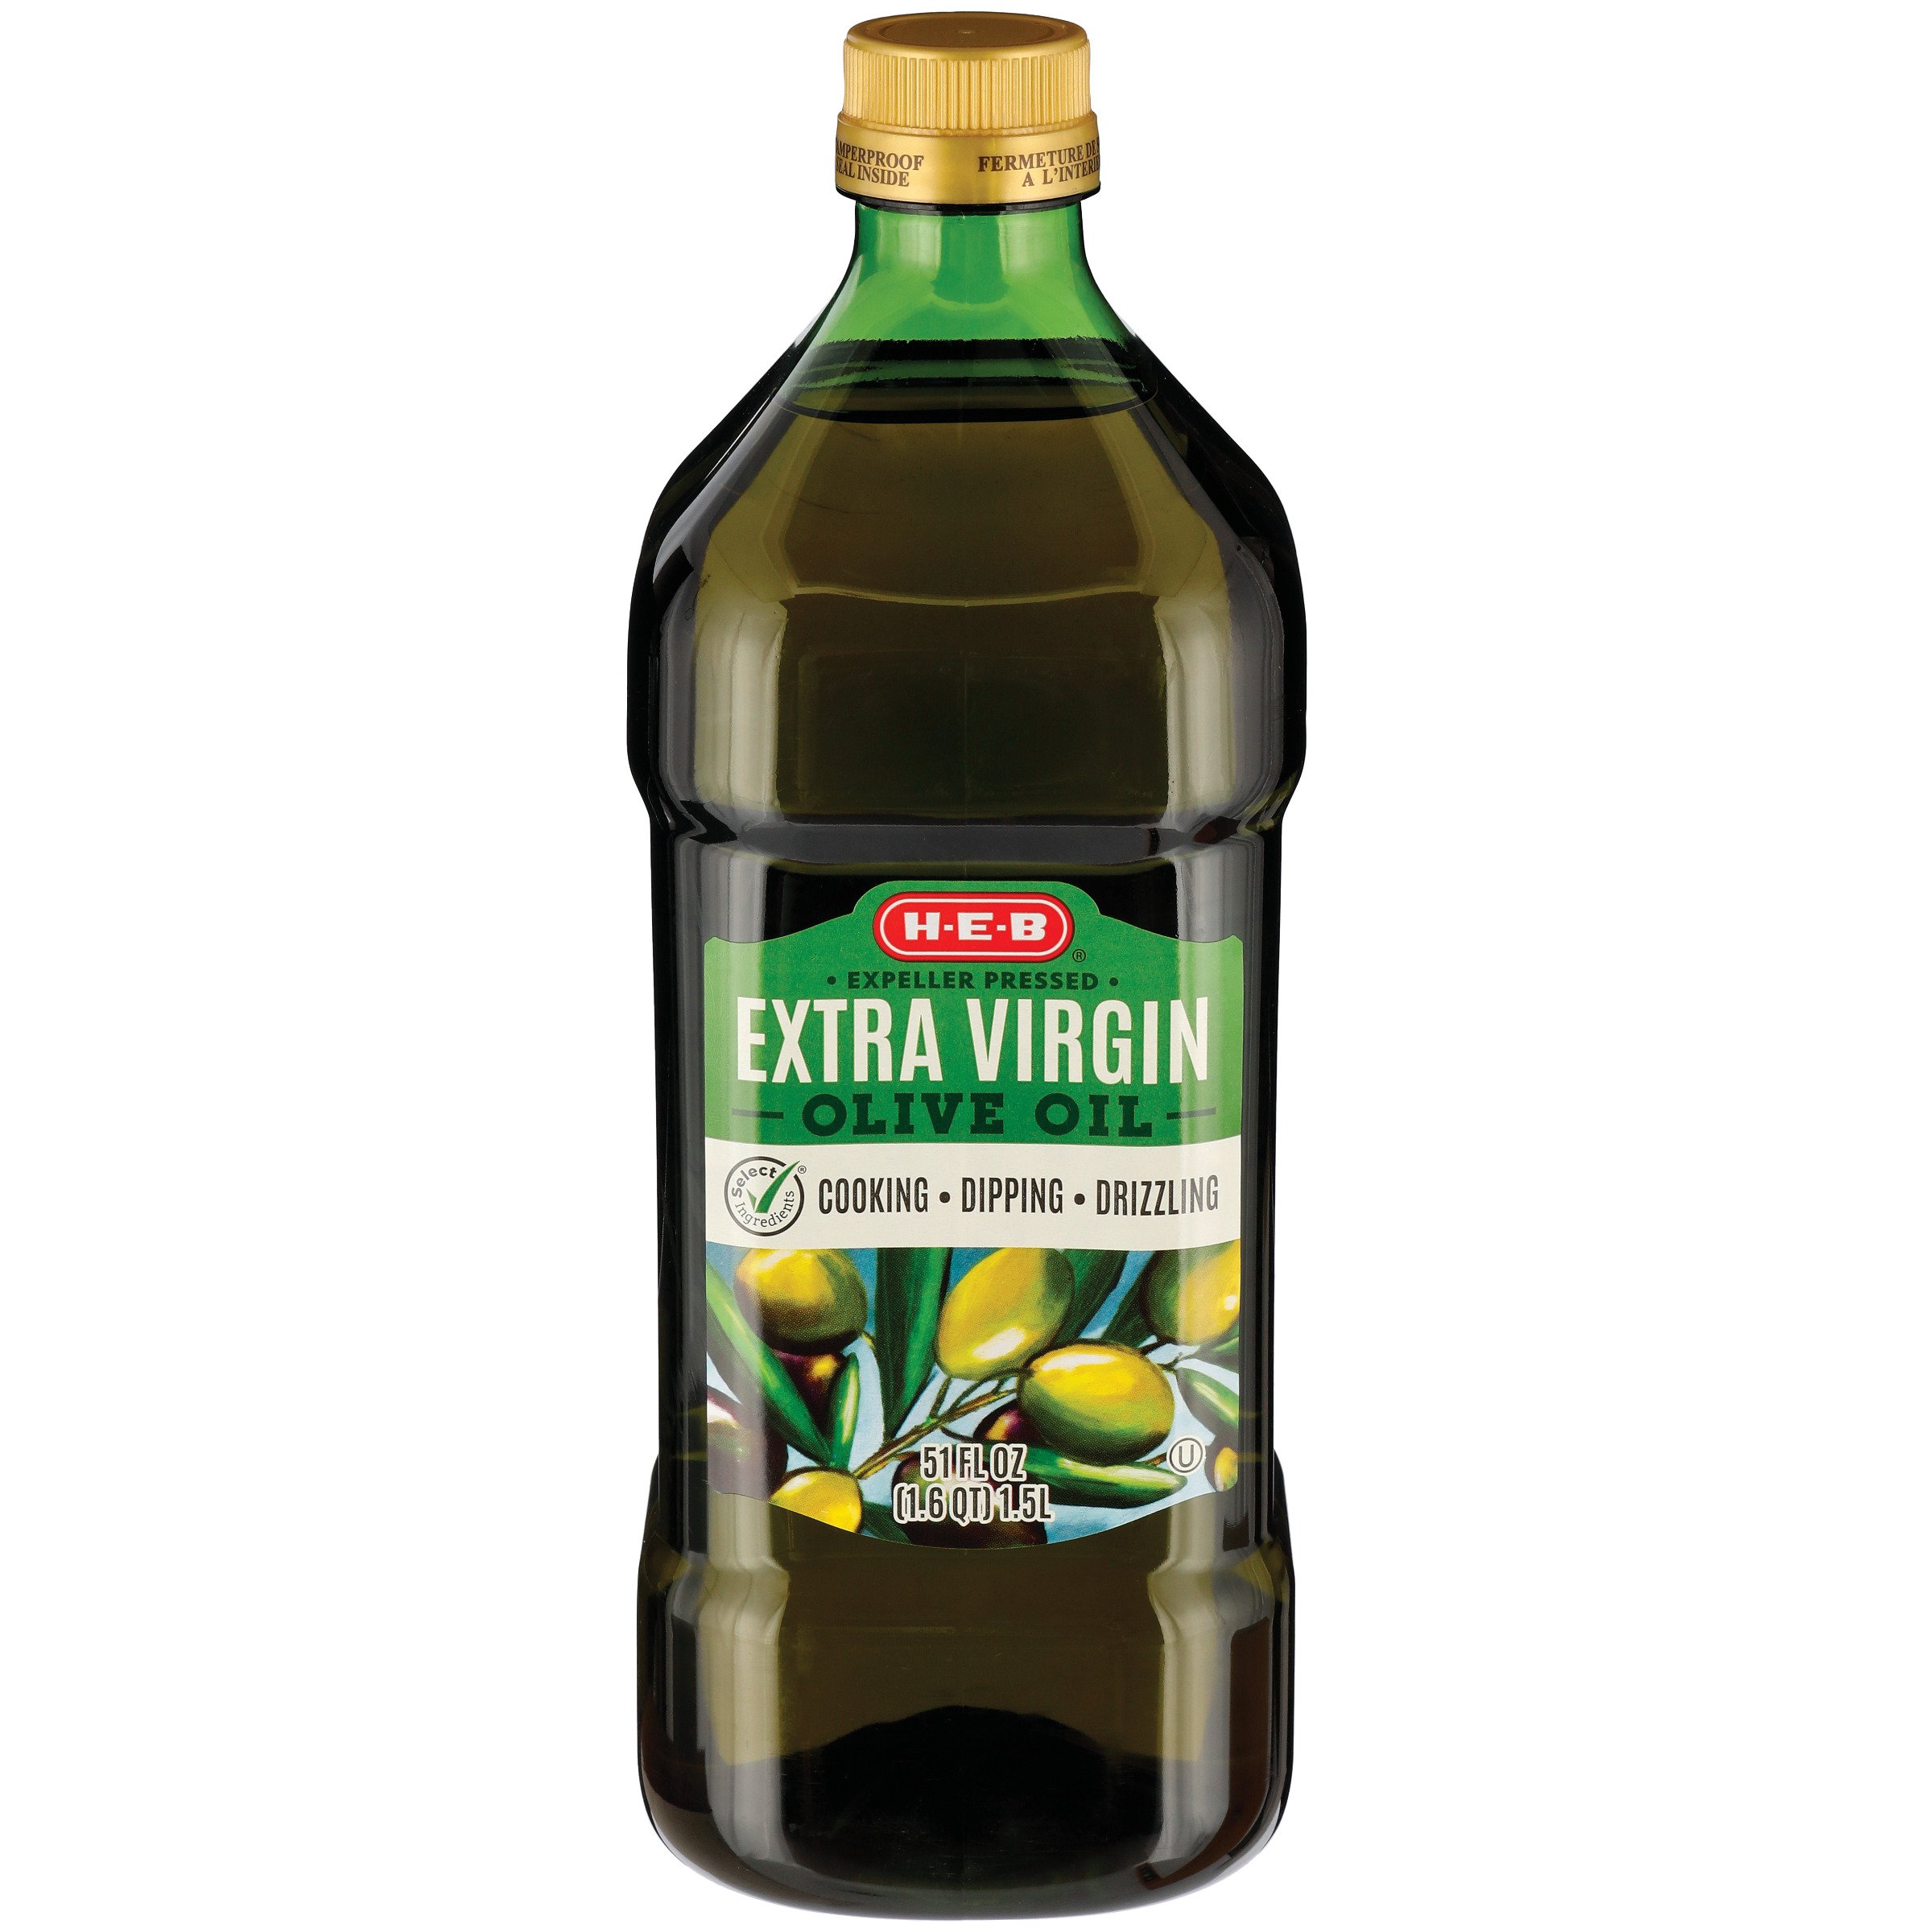 H-E-B Extra Virgin Olive Oil - Shop Dressing, Oil & Vinegar at H-E-B